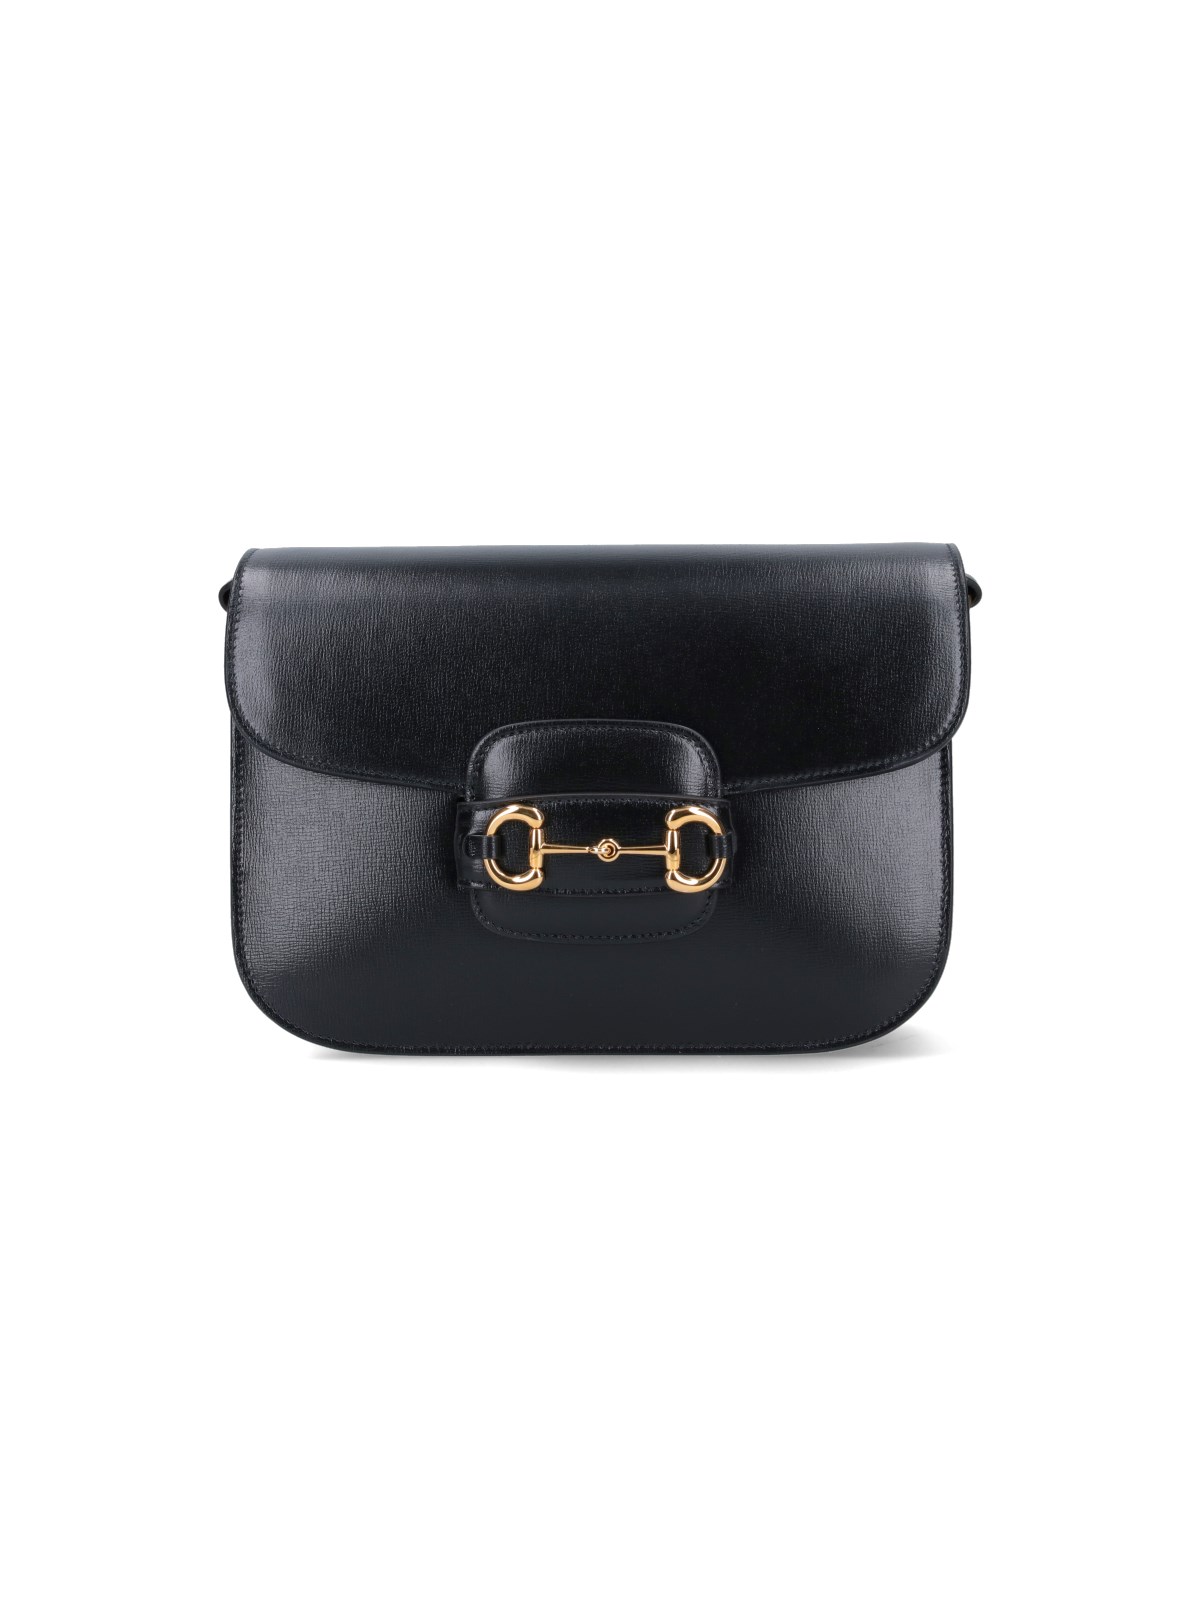 Black Leather Gucci 1955 Horsebit Shoulder Bag